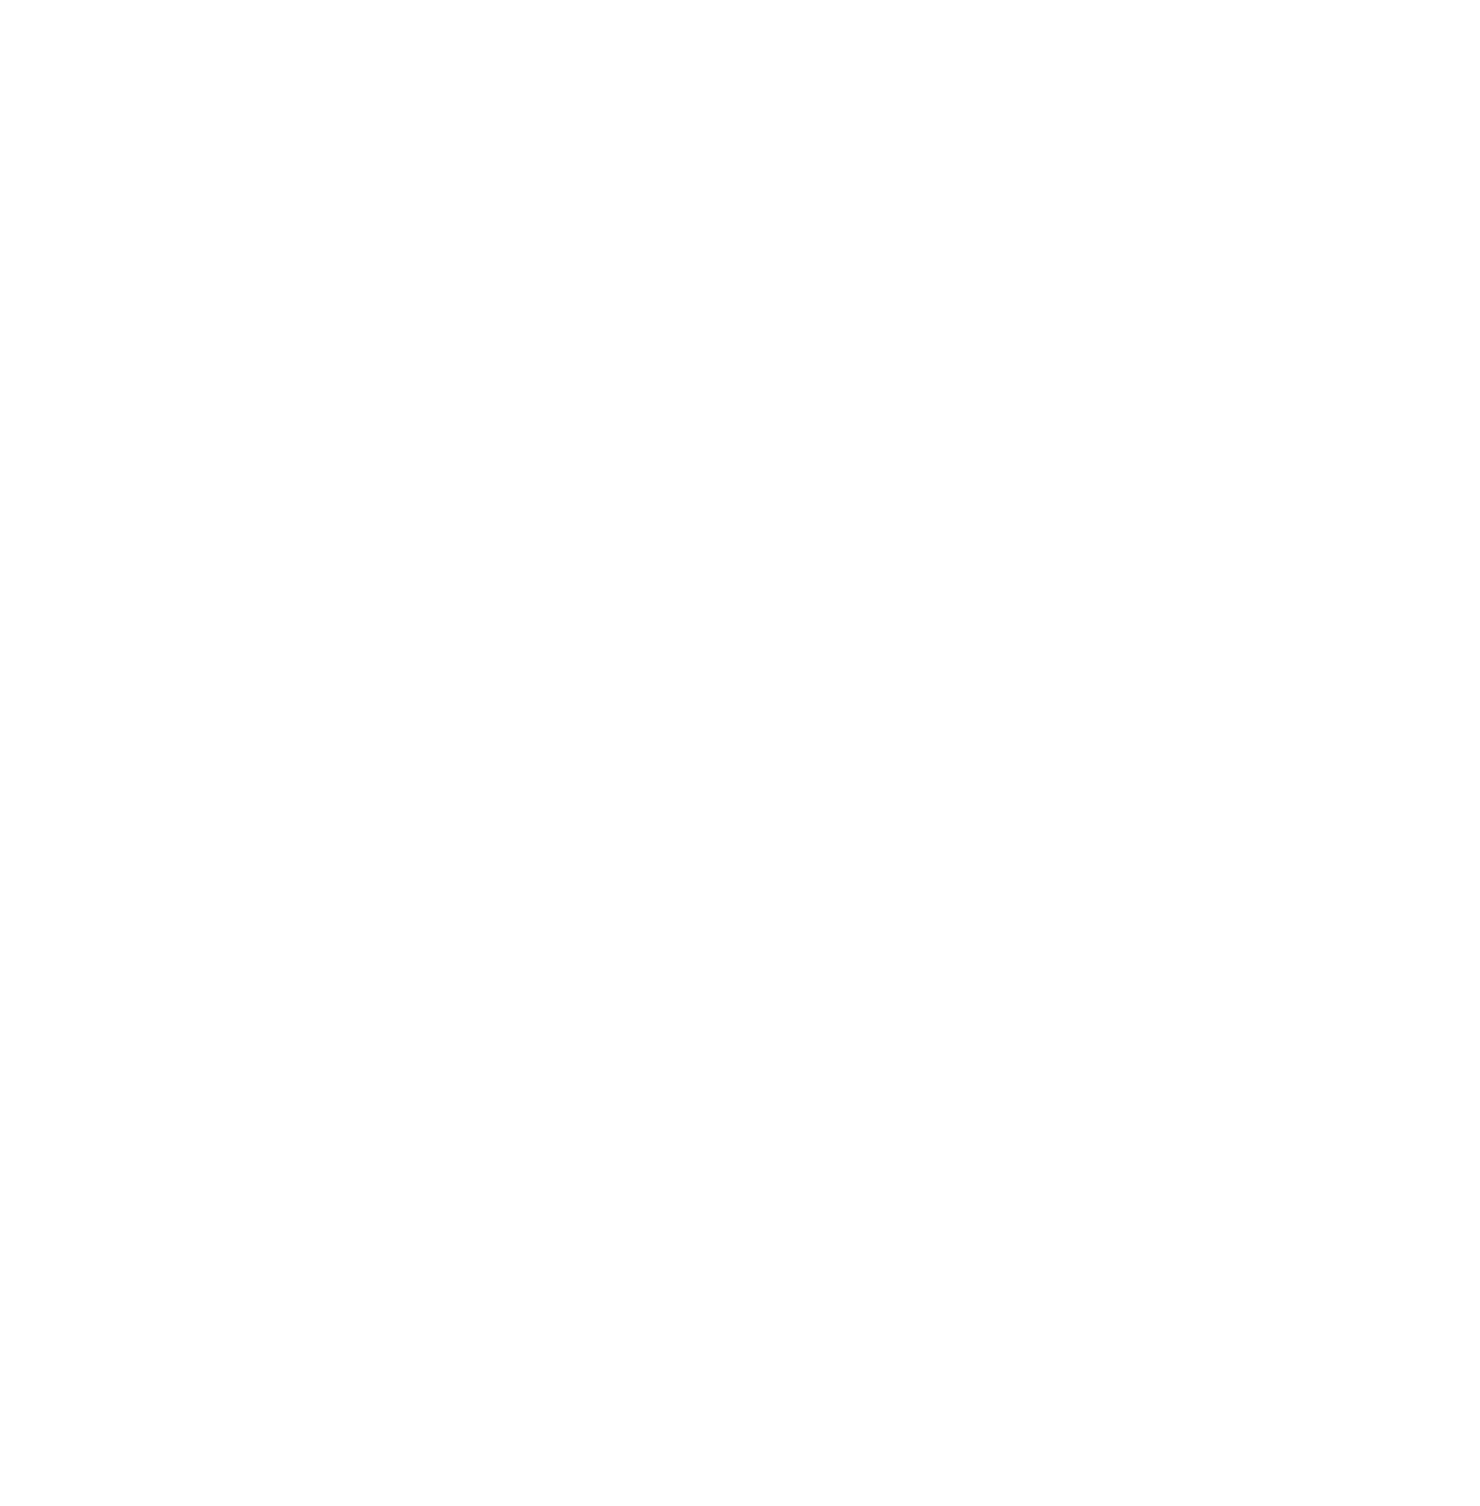 Orkla logo pour fonds sombres (PNG transparent)